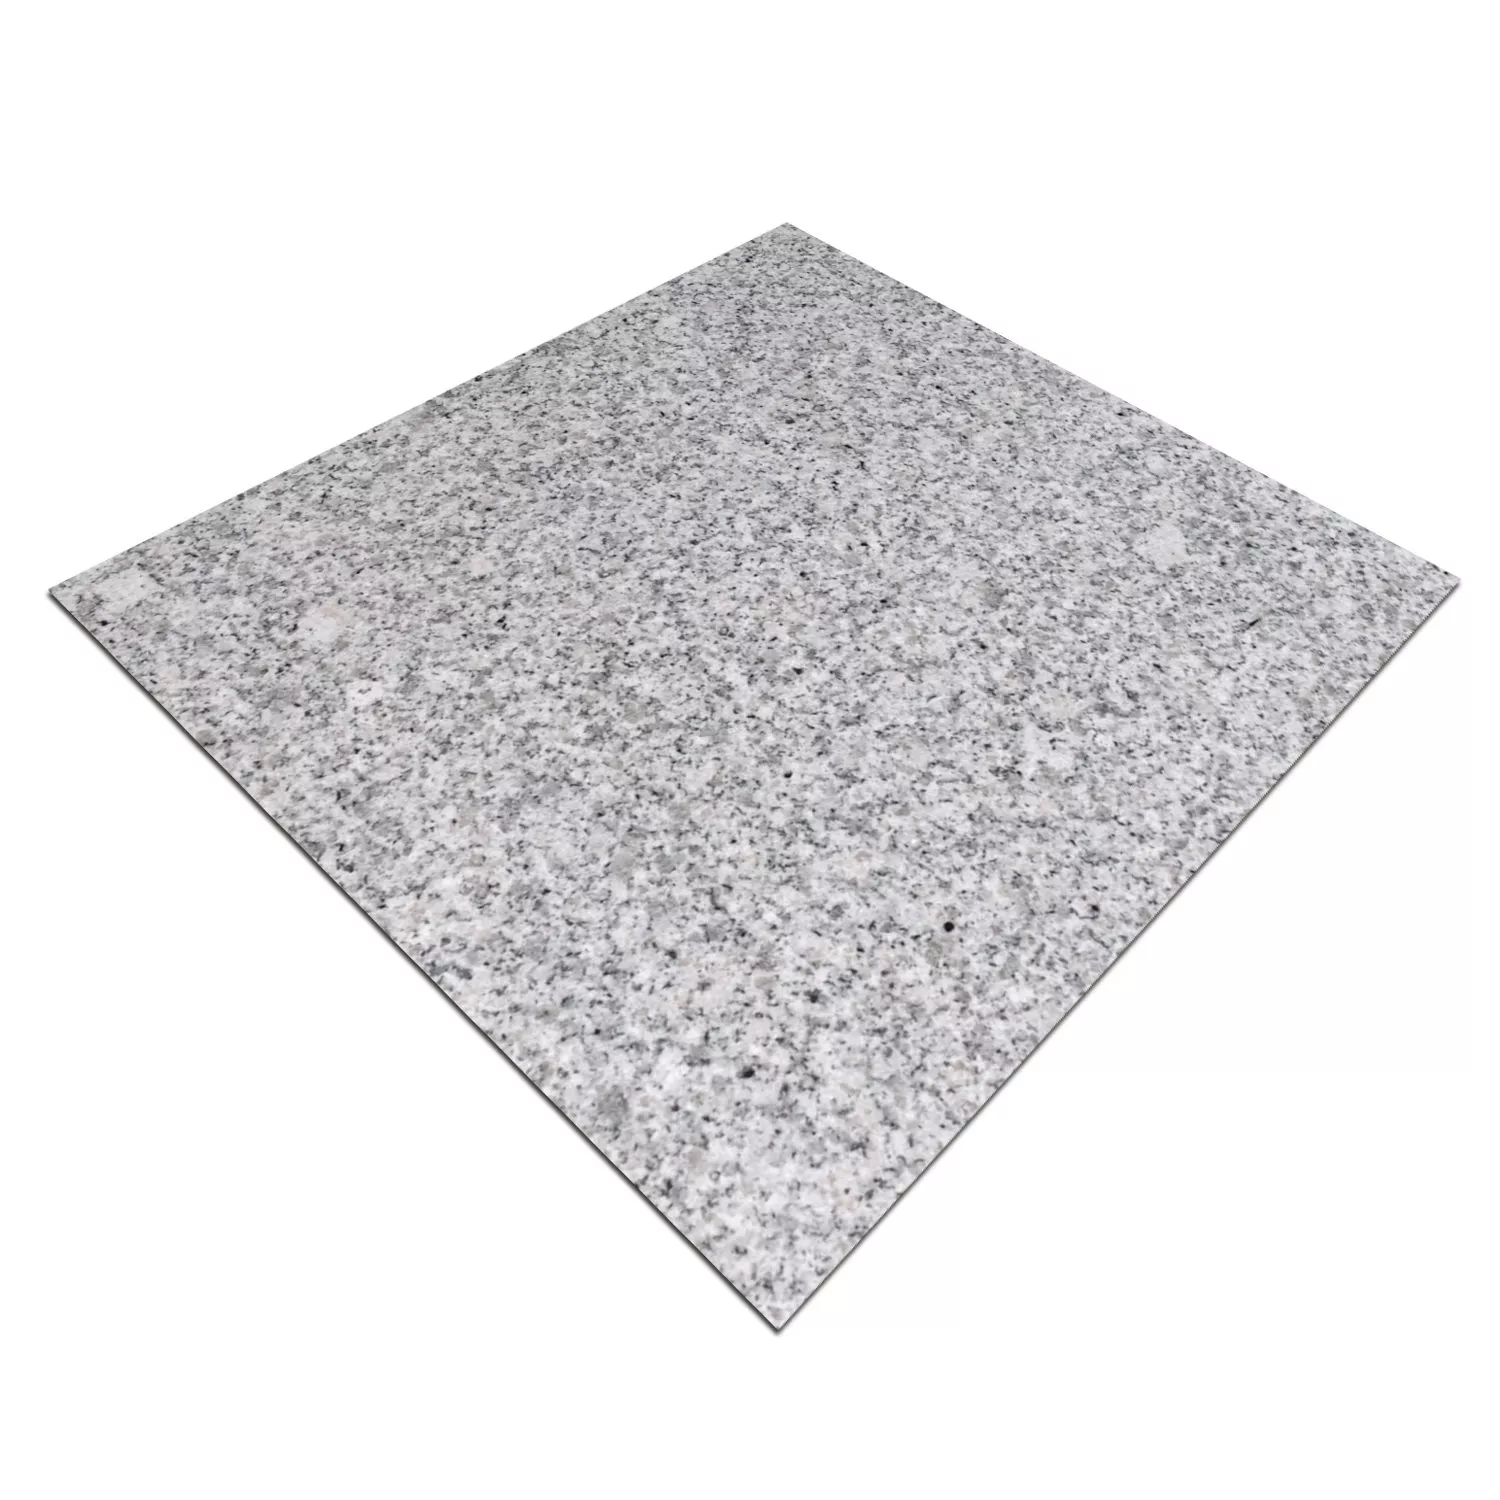 Ladrilhos De Pedra Natural Granito China Grey Polido 30,5x30,5cm